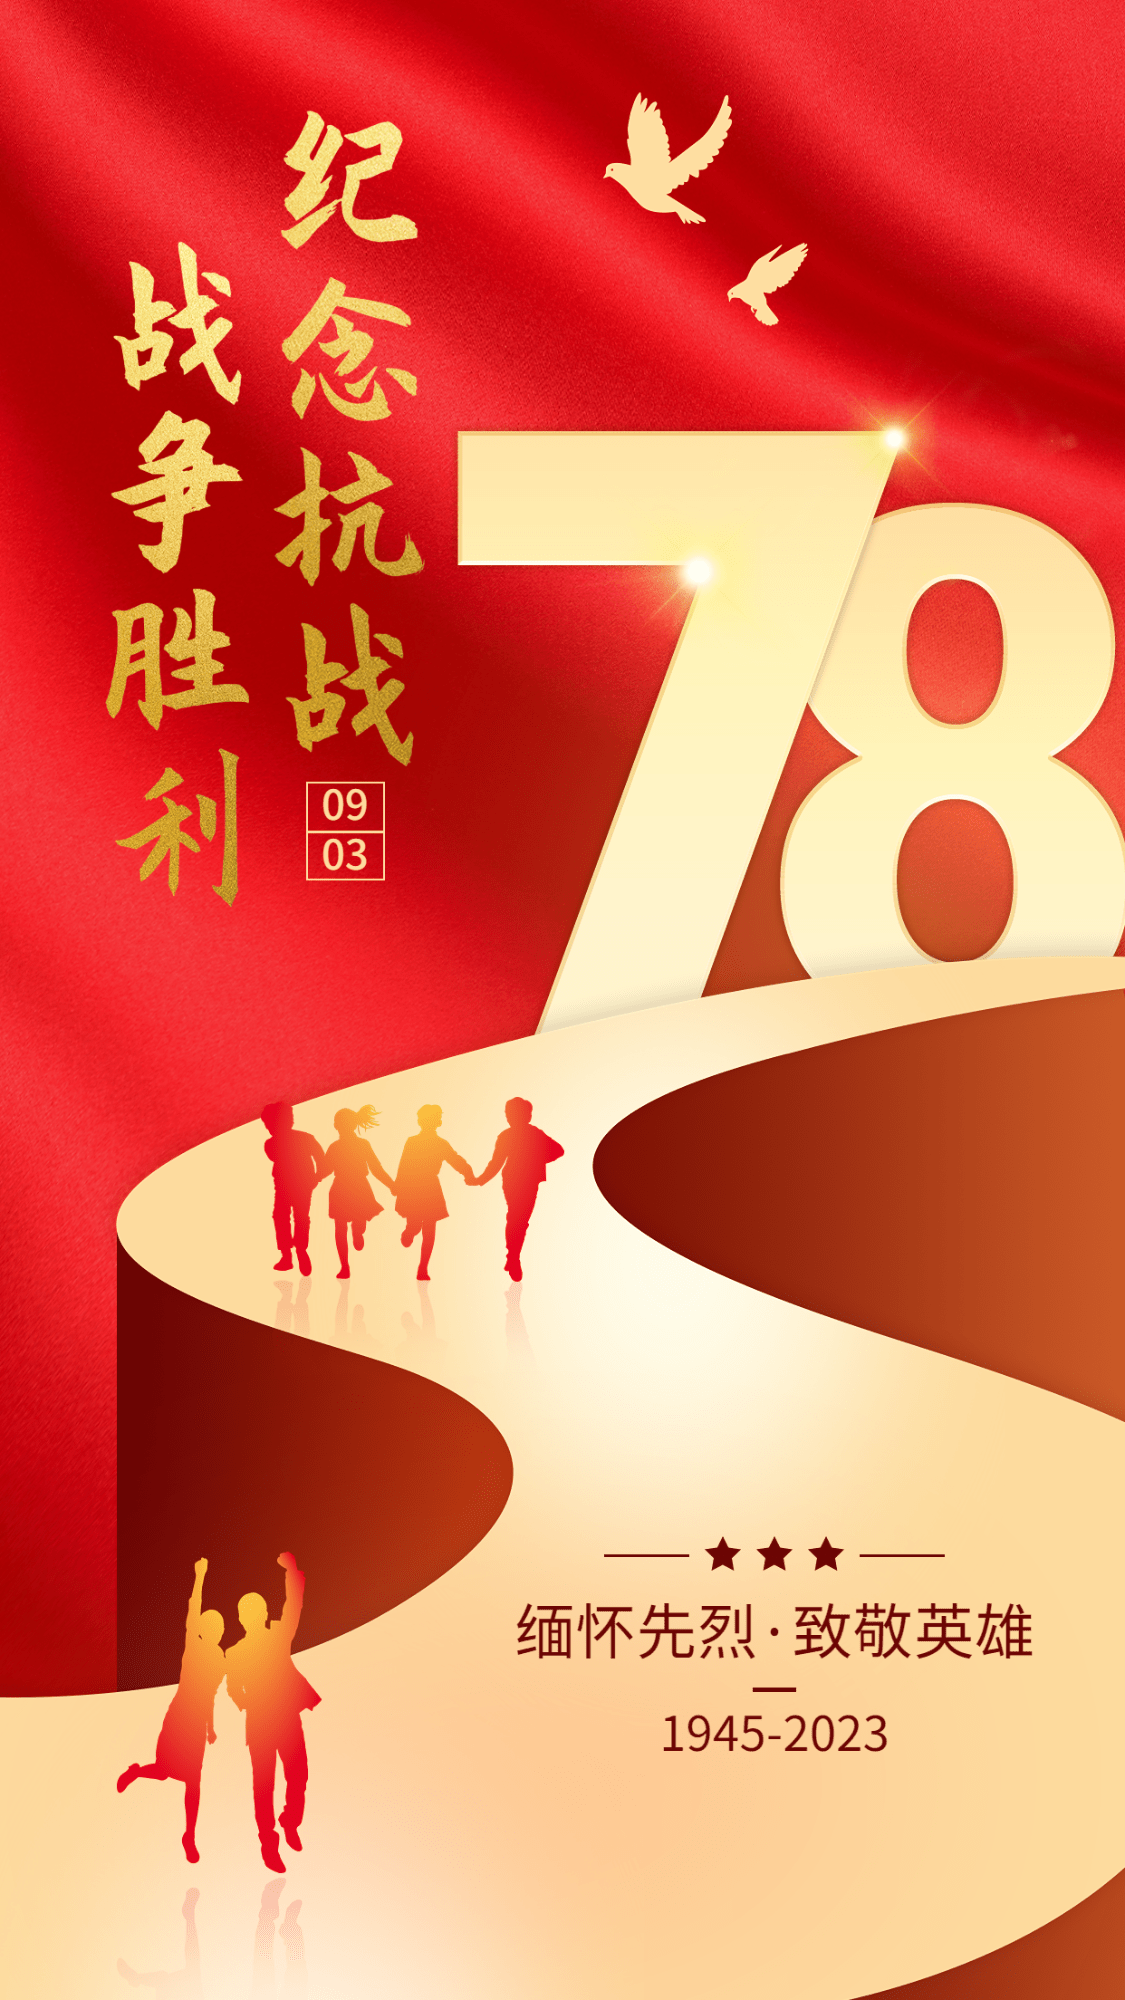 中国抗战胜利纪念日节日祝福政务风手机海报